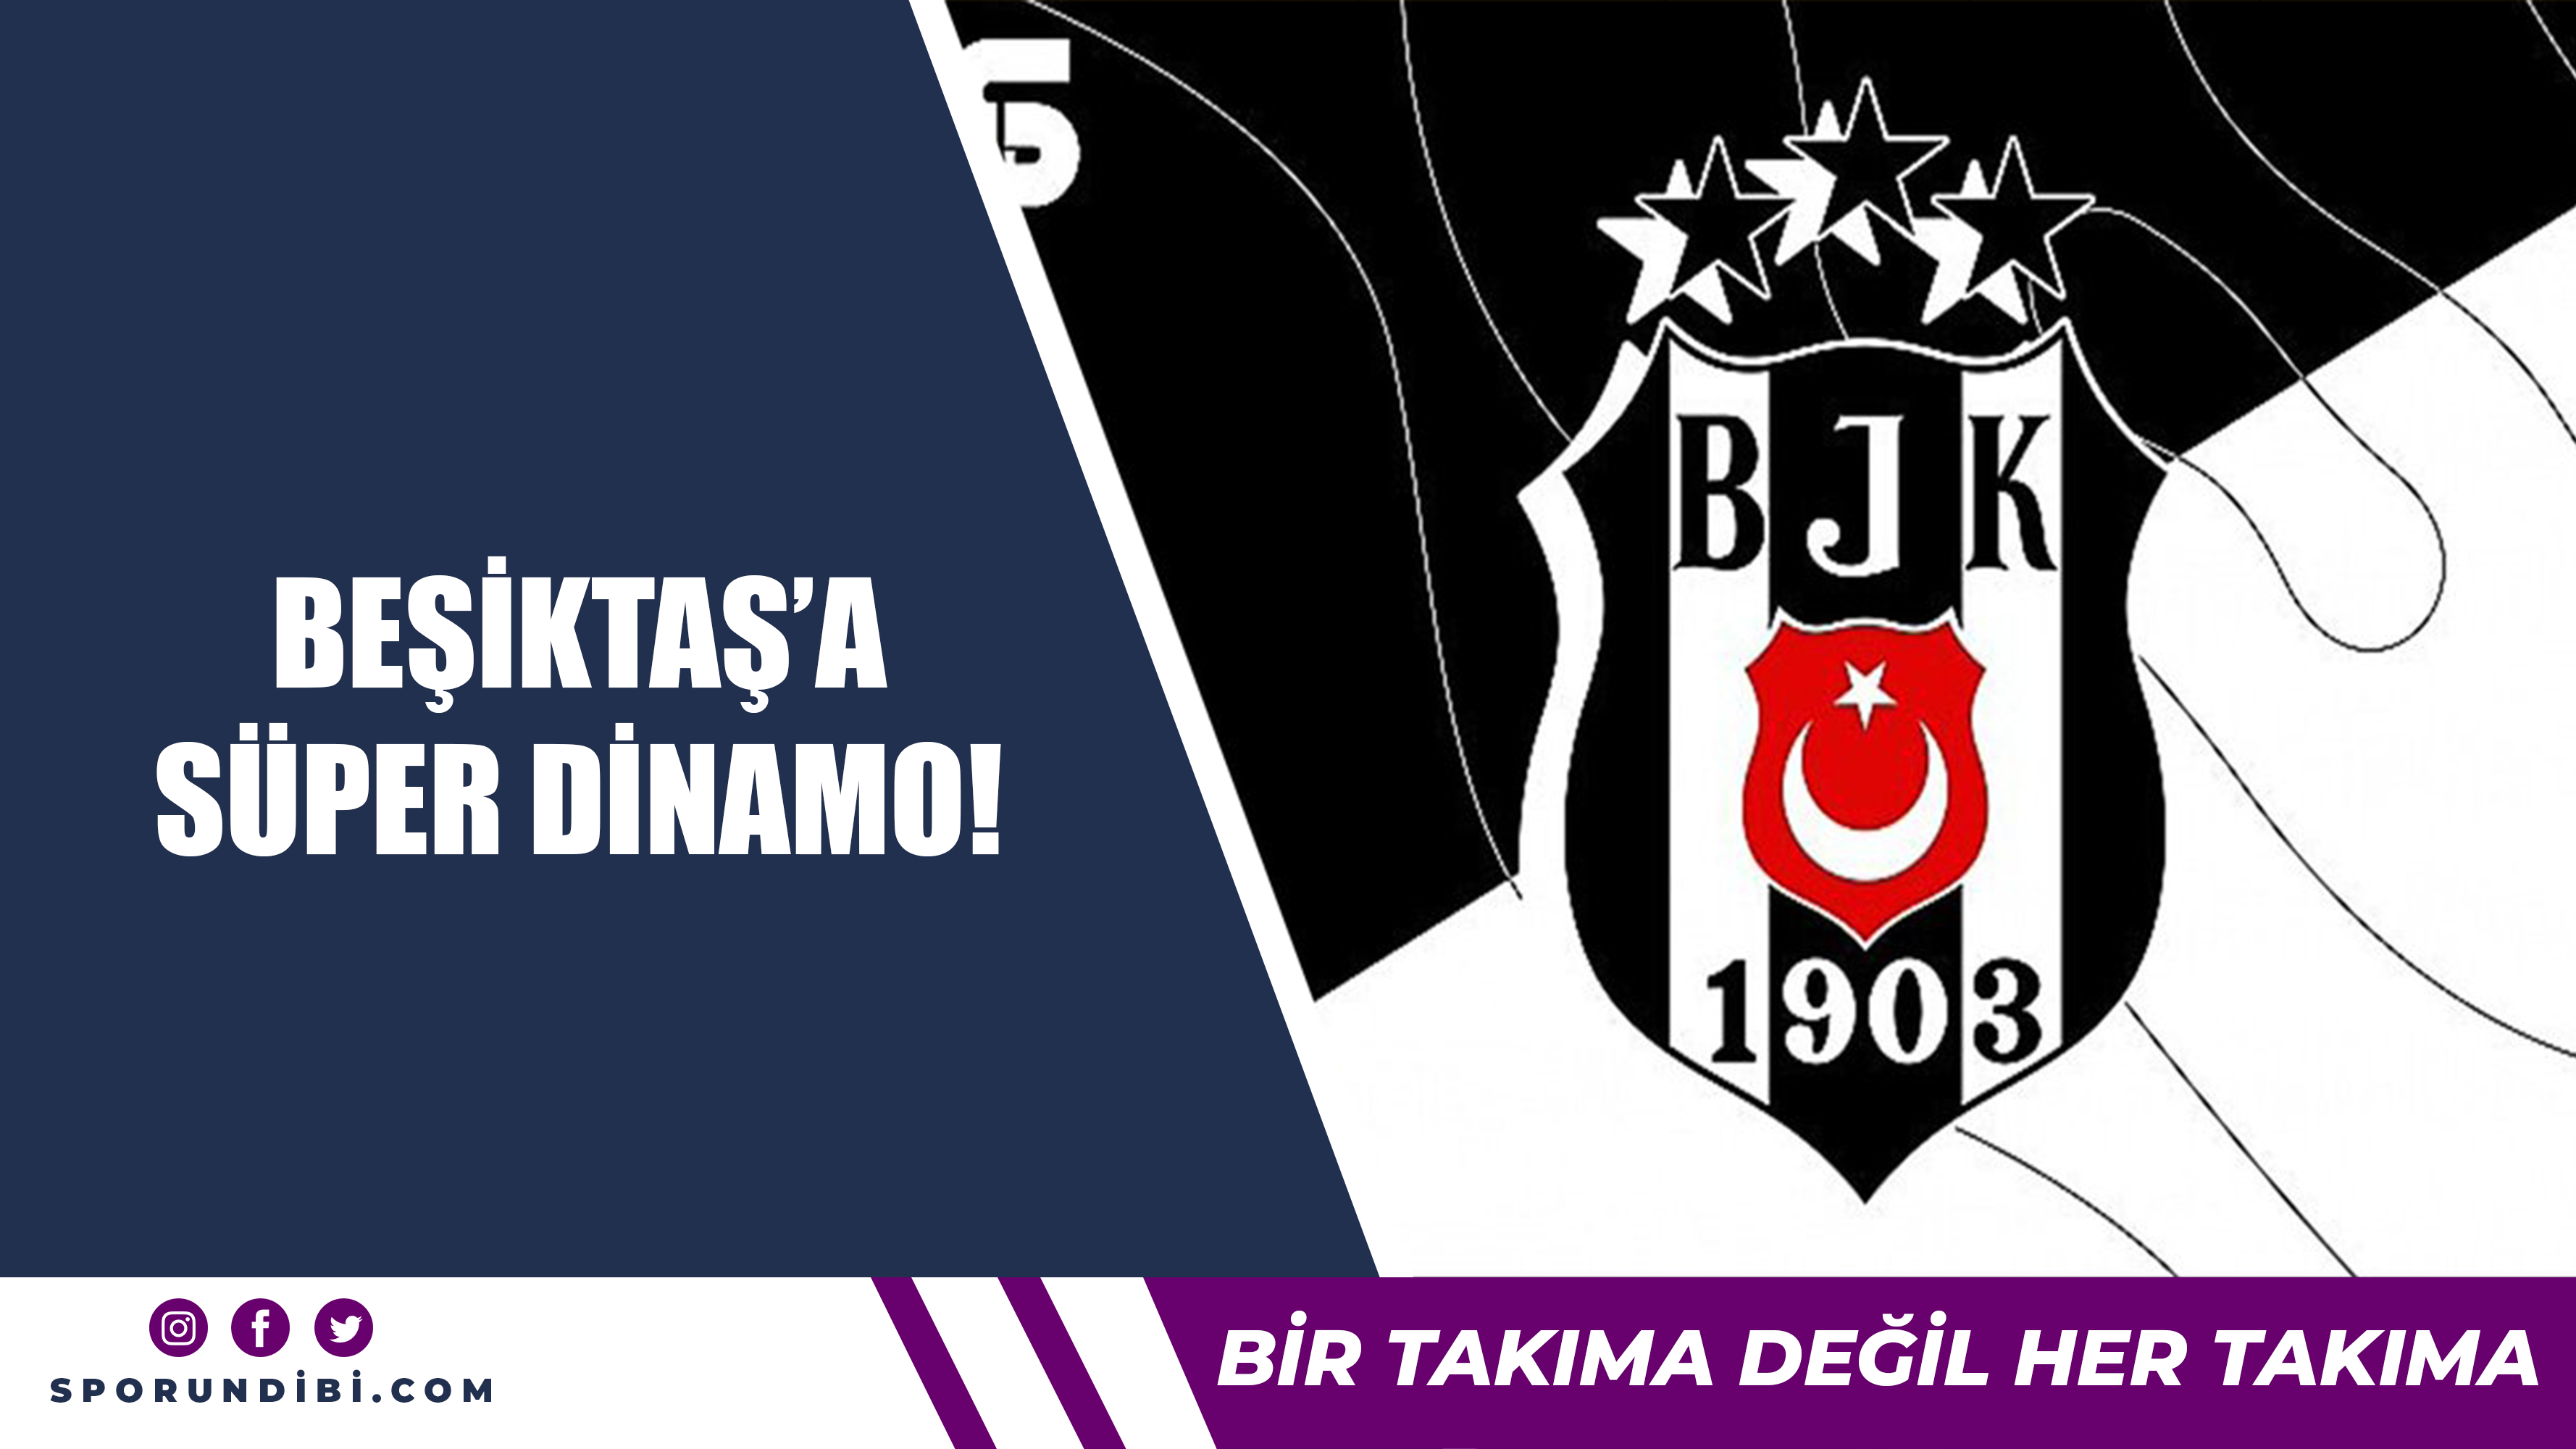 Beşiktaş'a süper dinamo!